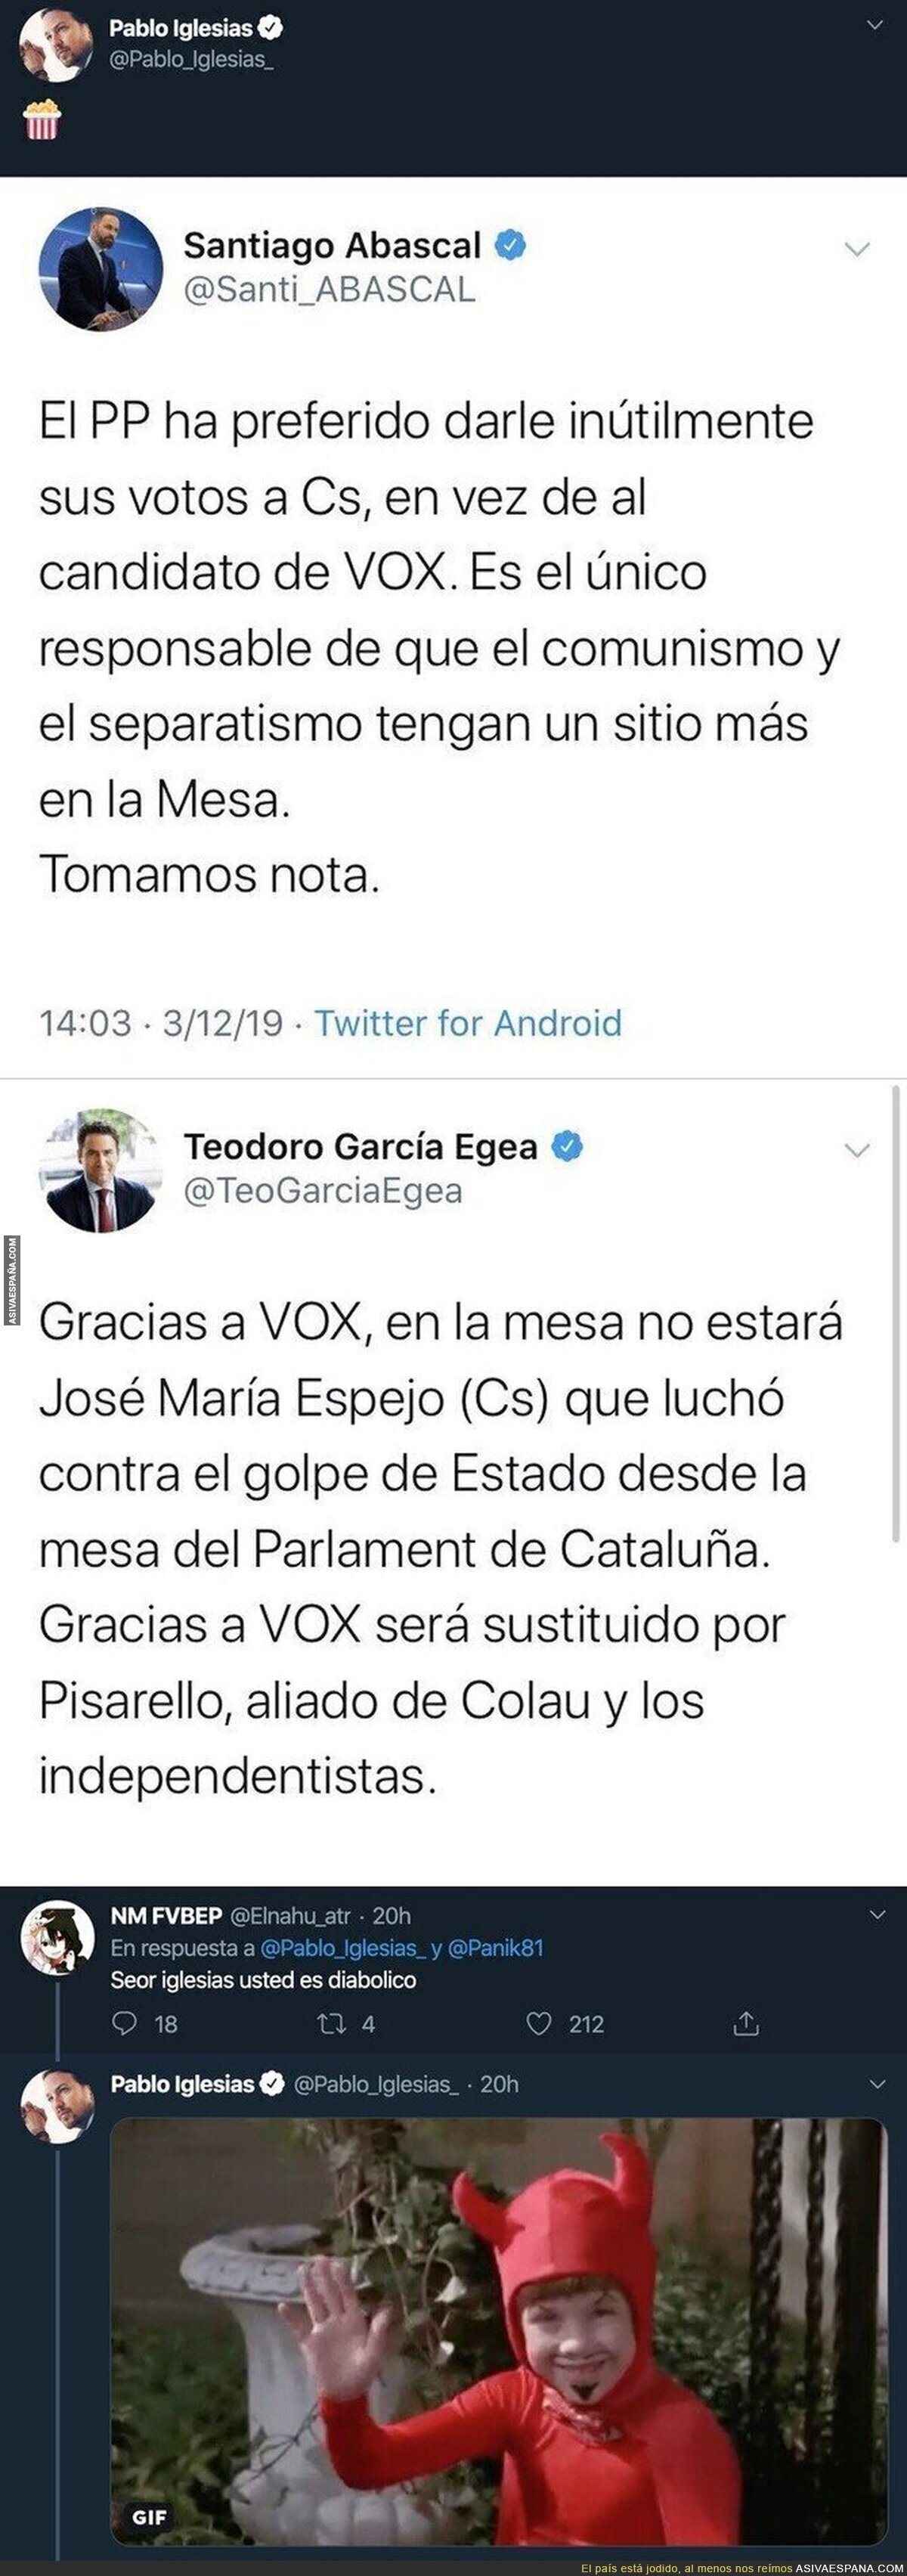 Pablo Iglesias se cachondea de VOX y PP en el primer día del Congreso tras pelearse de esta forma infantil